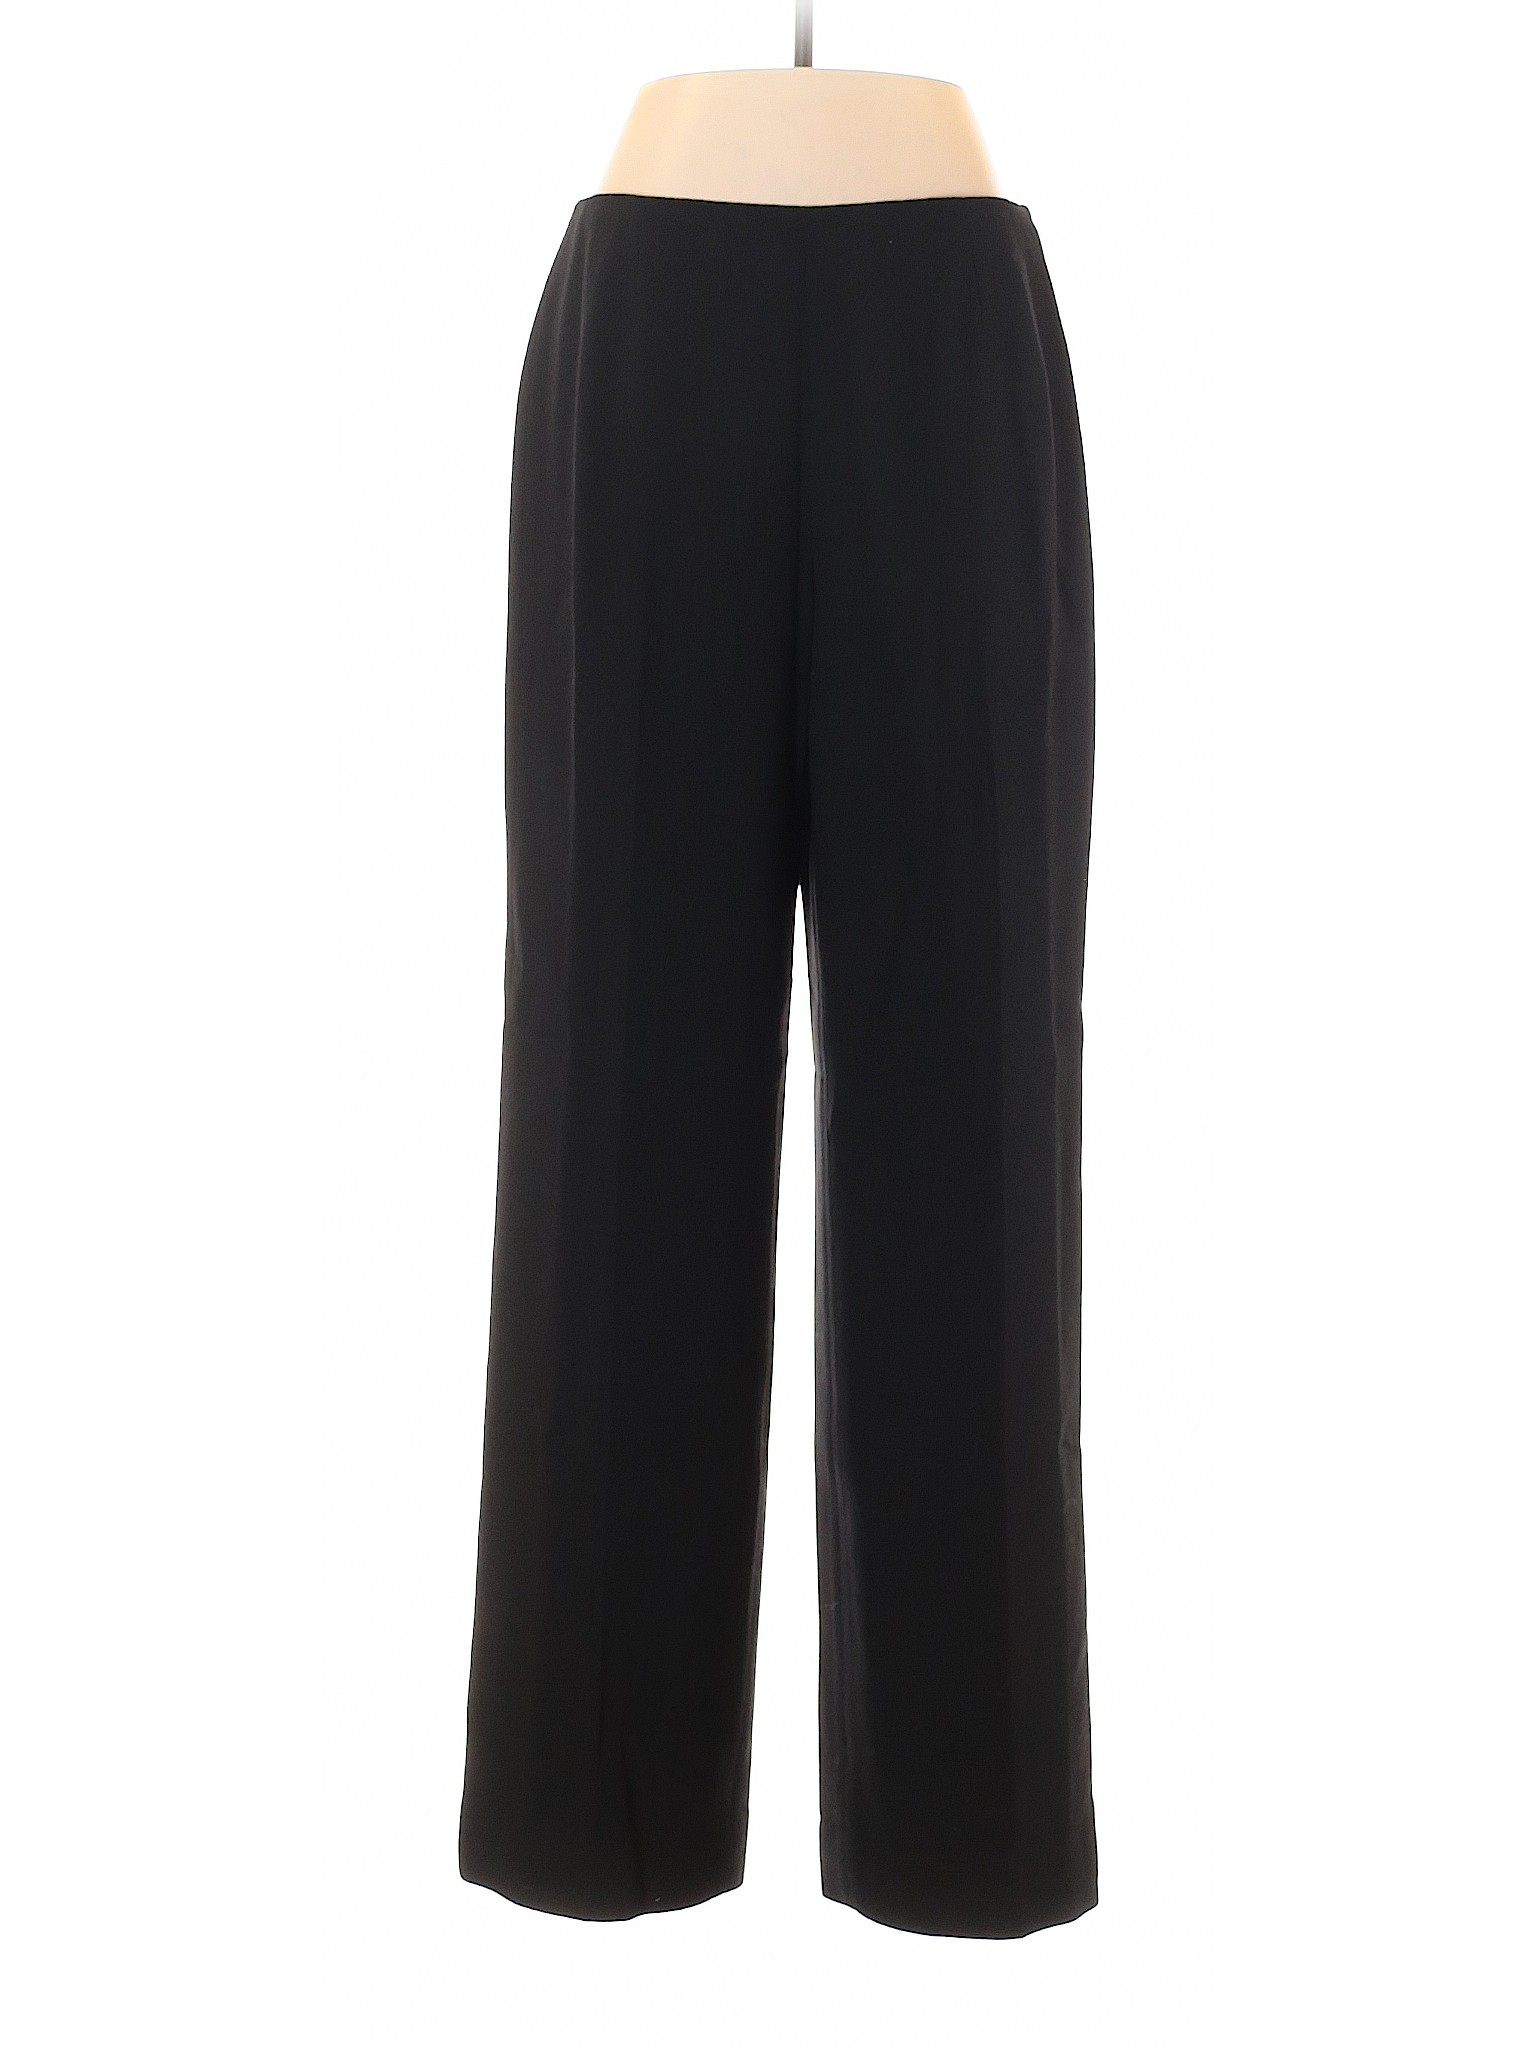 Dana Buchman Women Black Wool Pants 8 | eBay